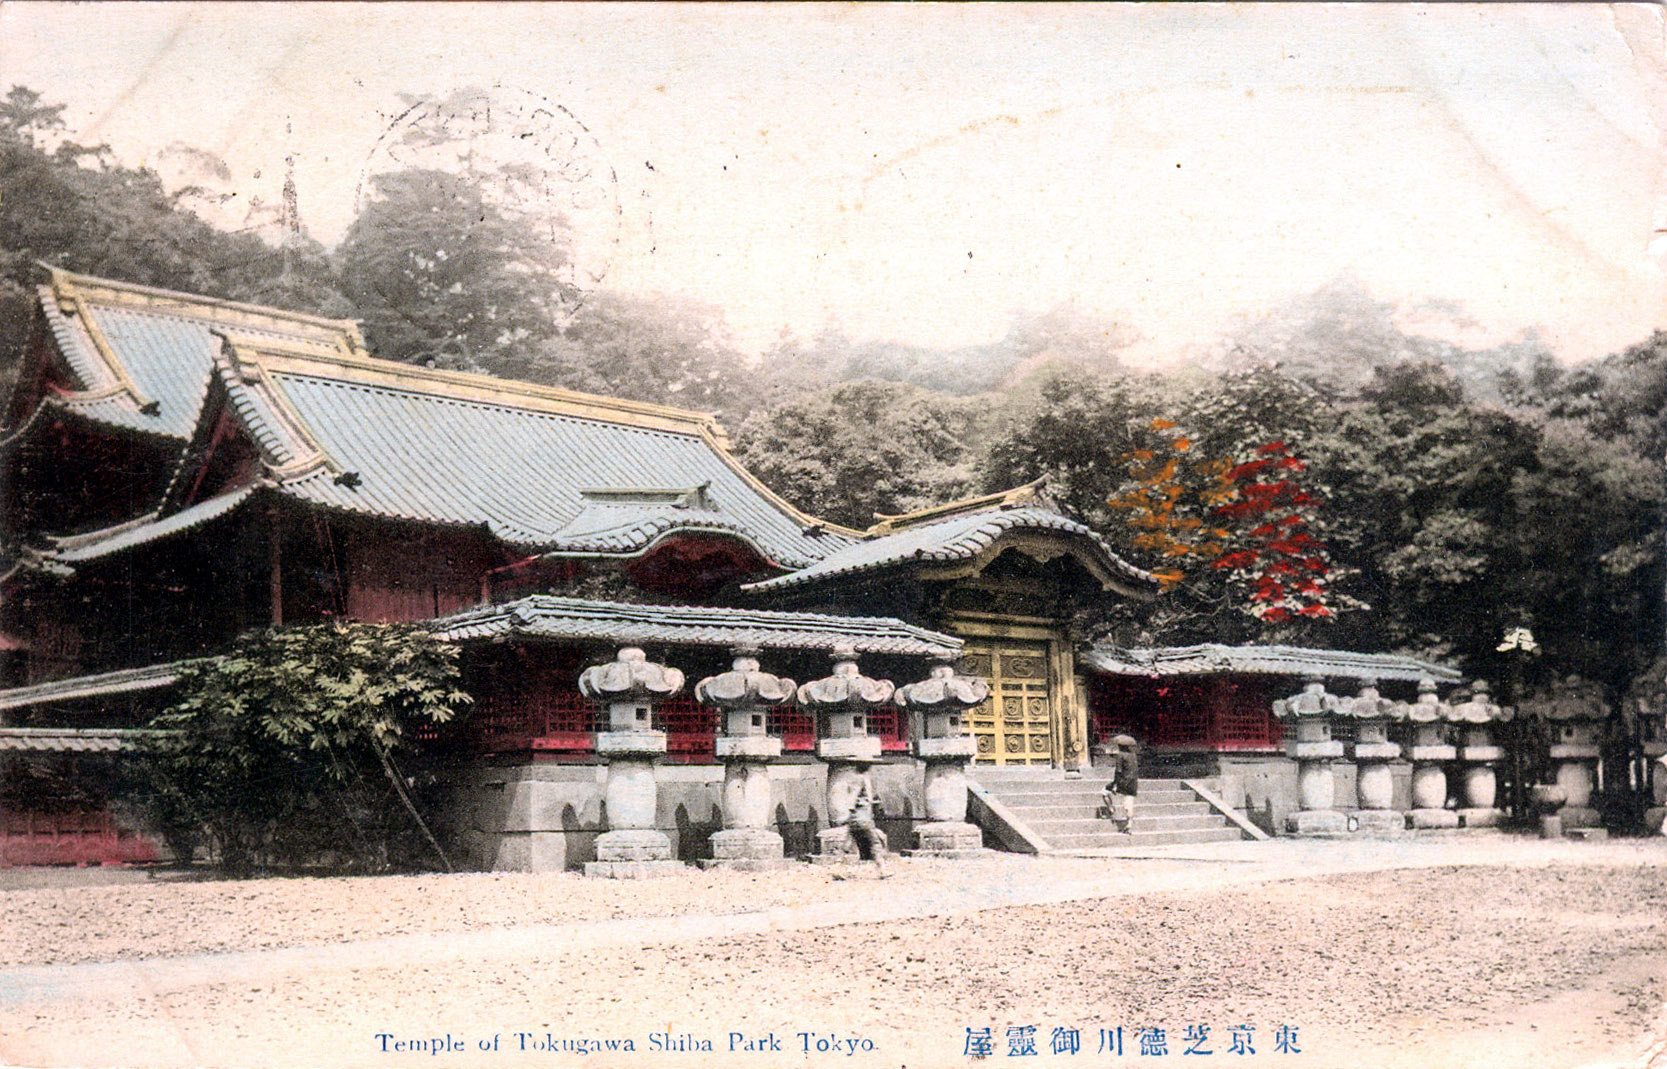 2nd Tokugawa Shogun temple, Zojo-ji, Shiba Park, Tokyo, c. 1910. | Old ...